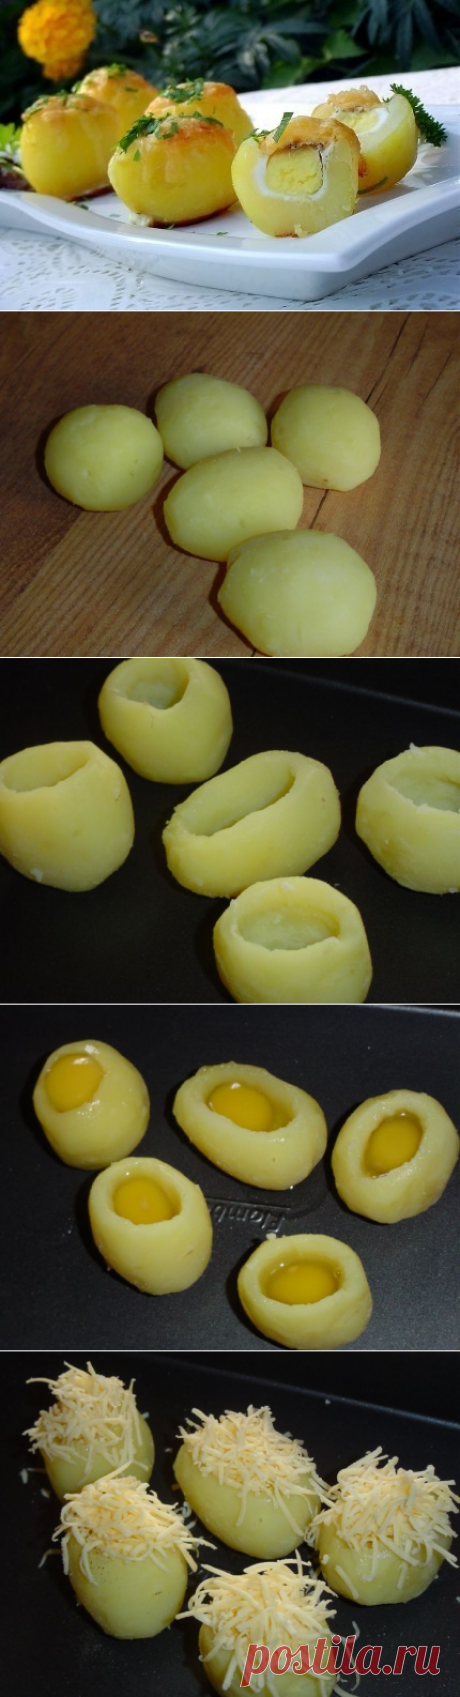 Как приготовить запеченный картофель сюрприз - рецепт, ингредиенты и фотографии